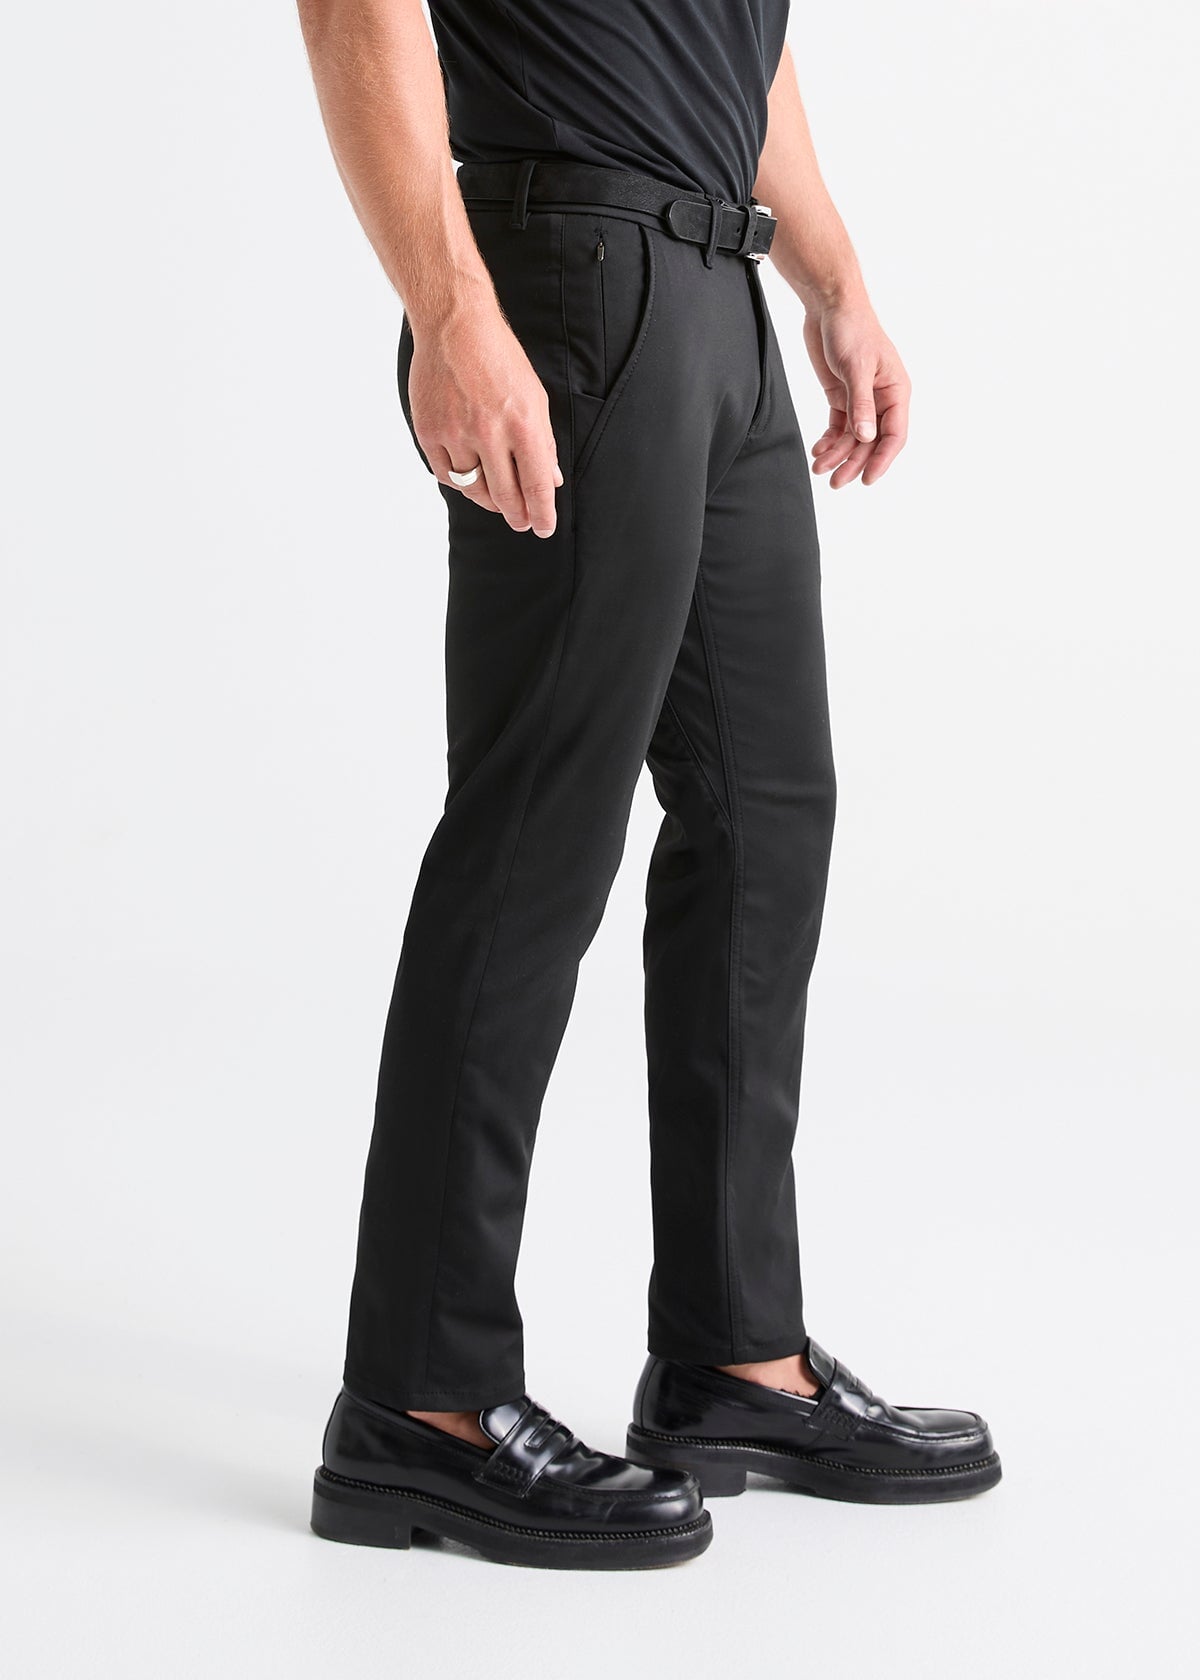 ELANHOOD Black & Cream & Grey Formal Trouser For Men